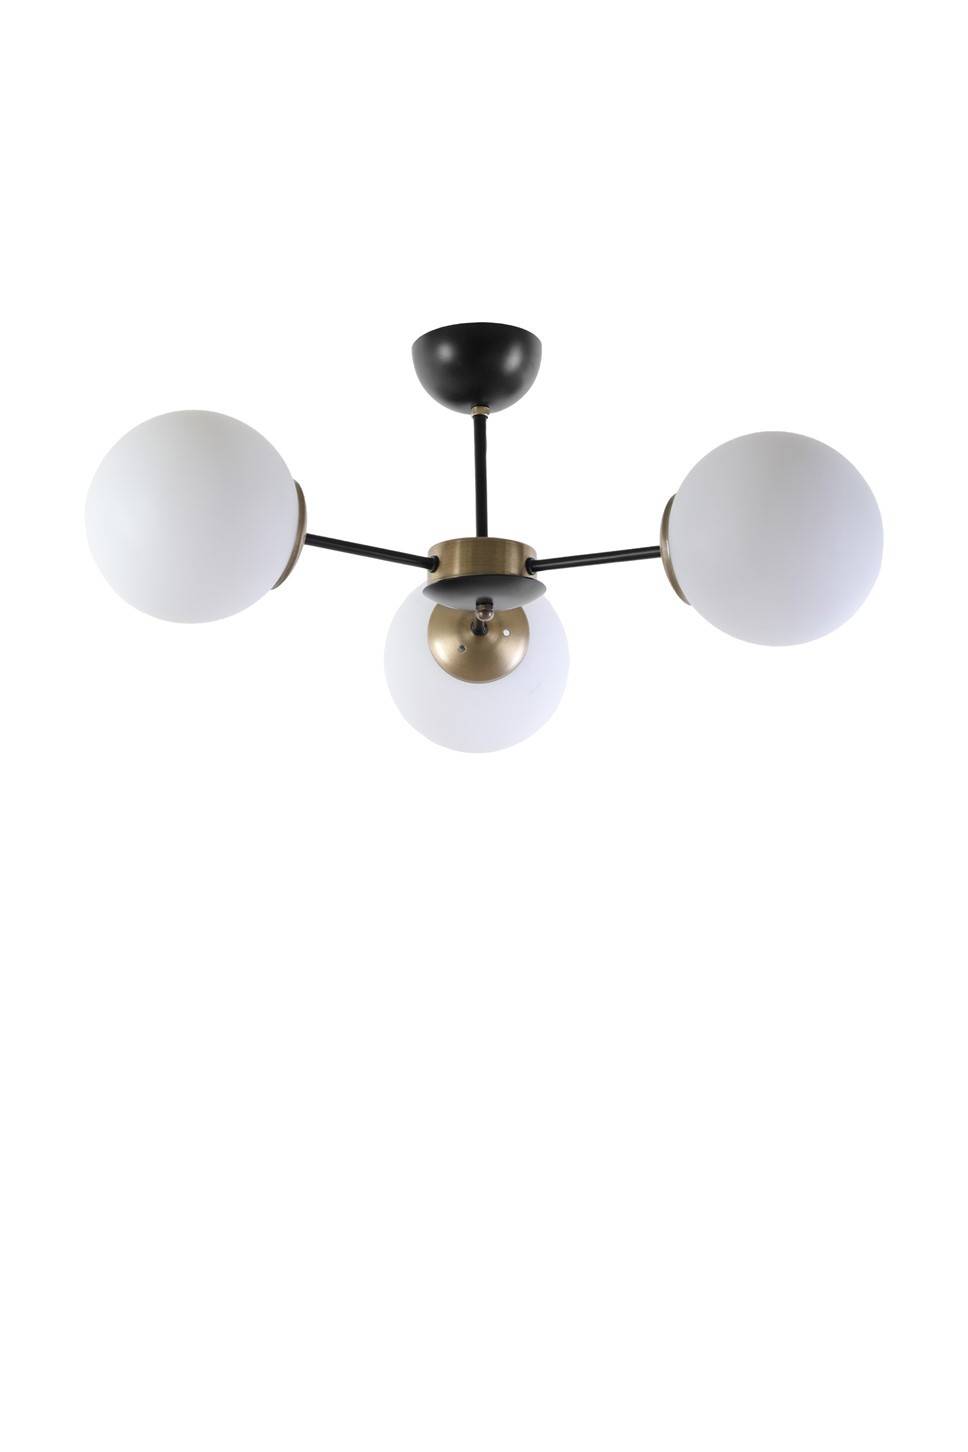 Lámpara de techo 3 globos soporte Y Bulla Metal Vidrio Negro Blanco